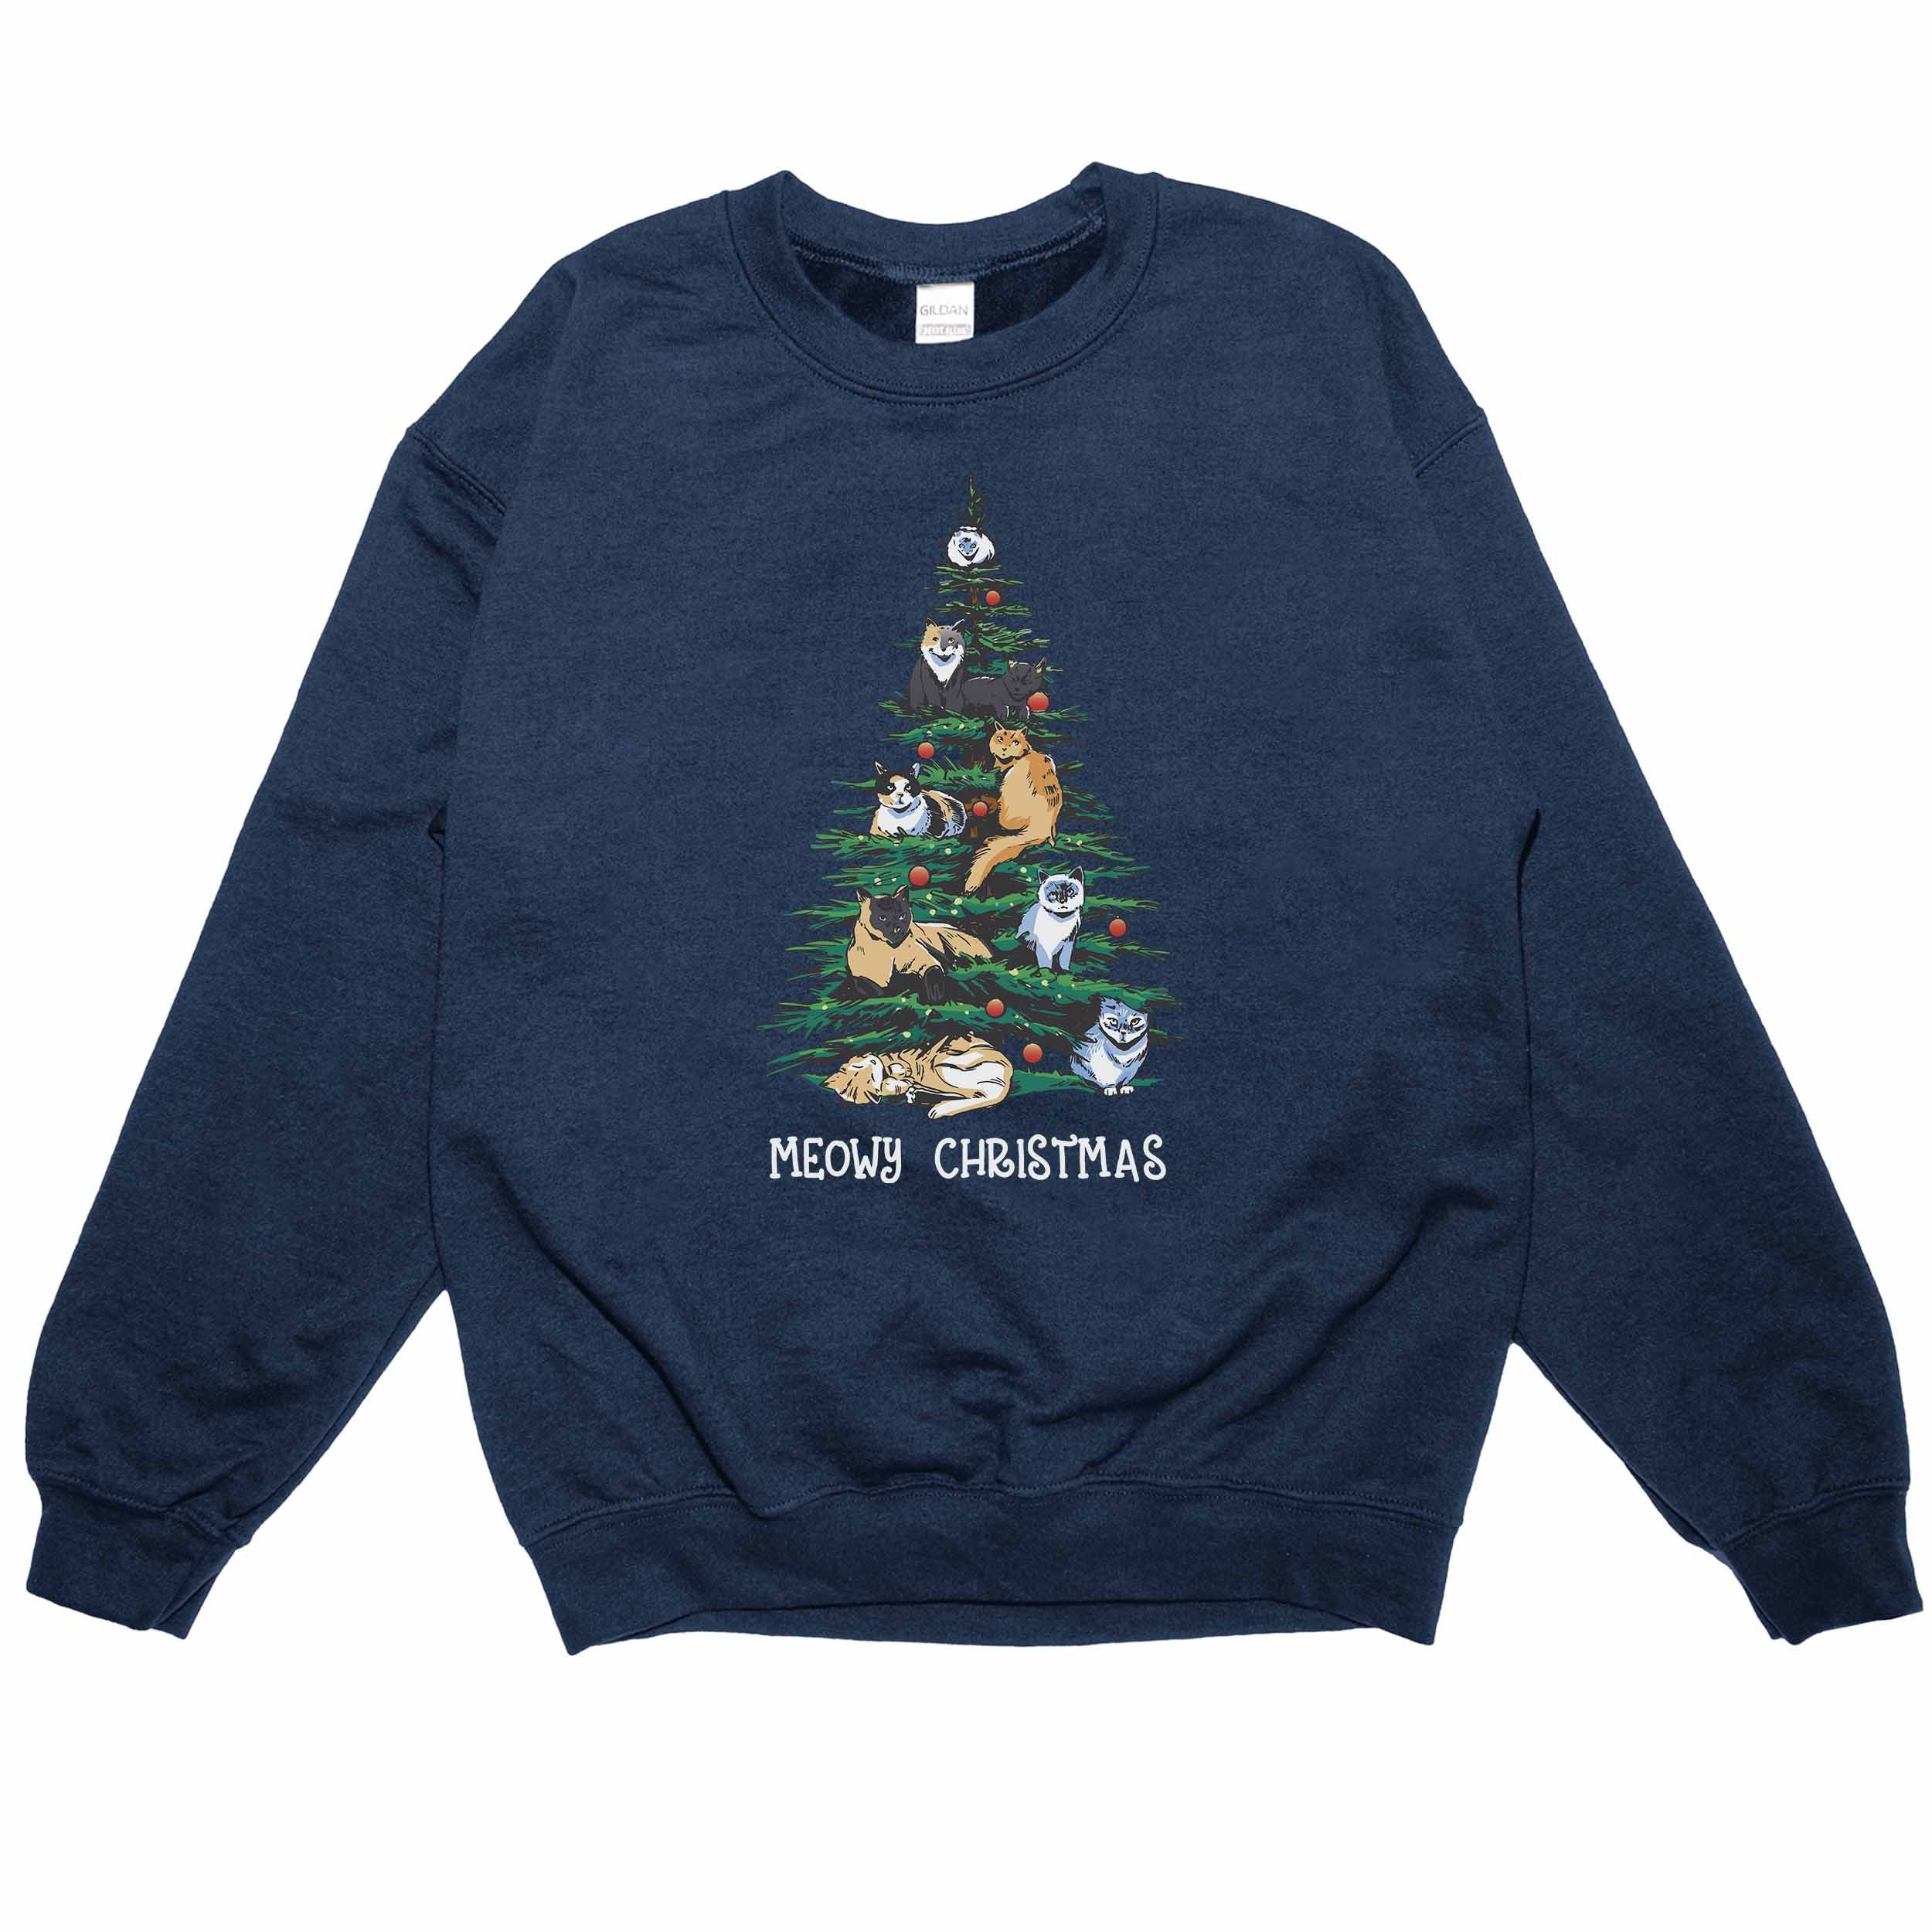 Discover Christmas Cat Sweatshirt Or Hoodie For A Christmas Outfit - Christmas Sweater, Cat Shirt, Cat Christmas graphic Tee, Christmas Crewneck sweatshirts